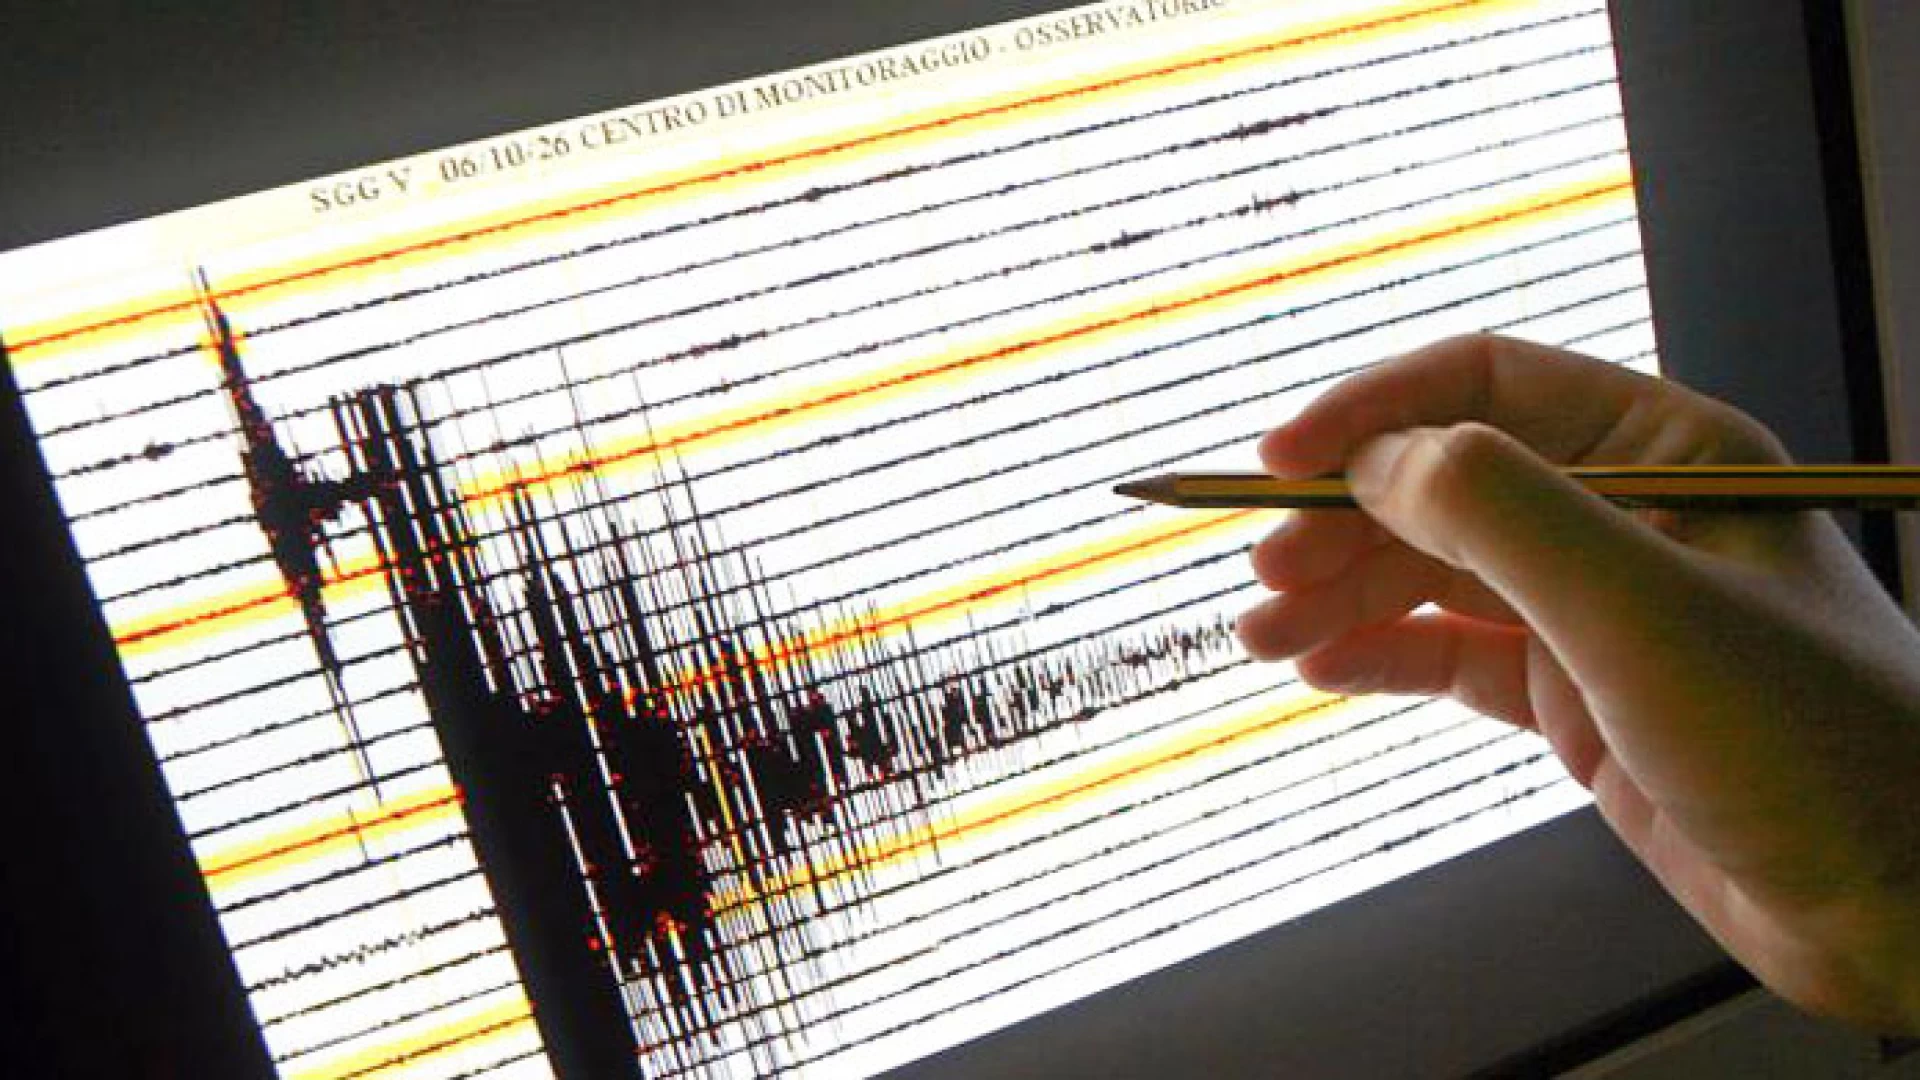 Guardialfiera: forte scossa di Terremoto, sisma avvertito anche a Vasto e San Salvo. Magnitudo 4.2 , epicentro Acquaviva Collecroce